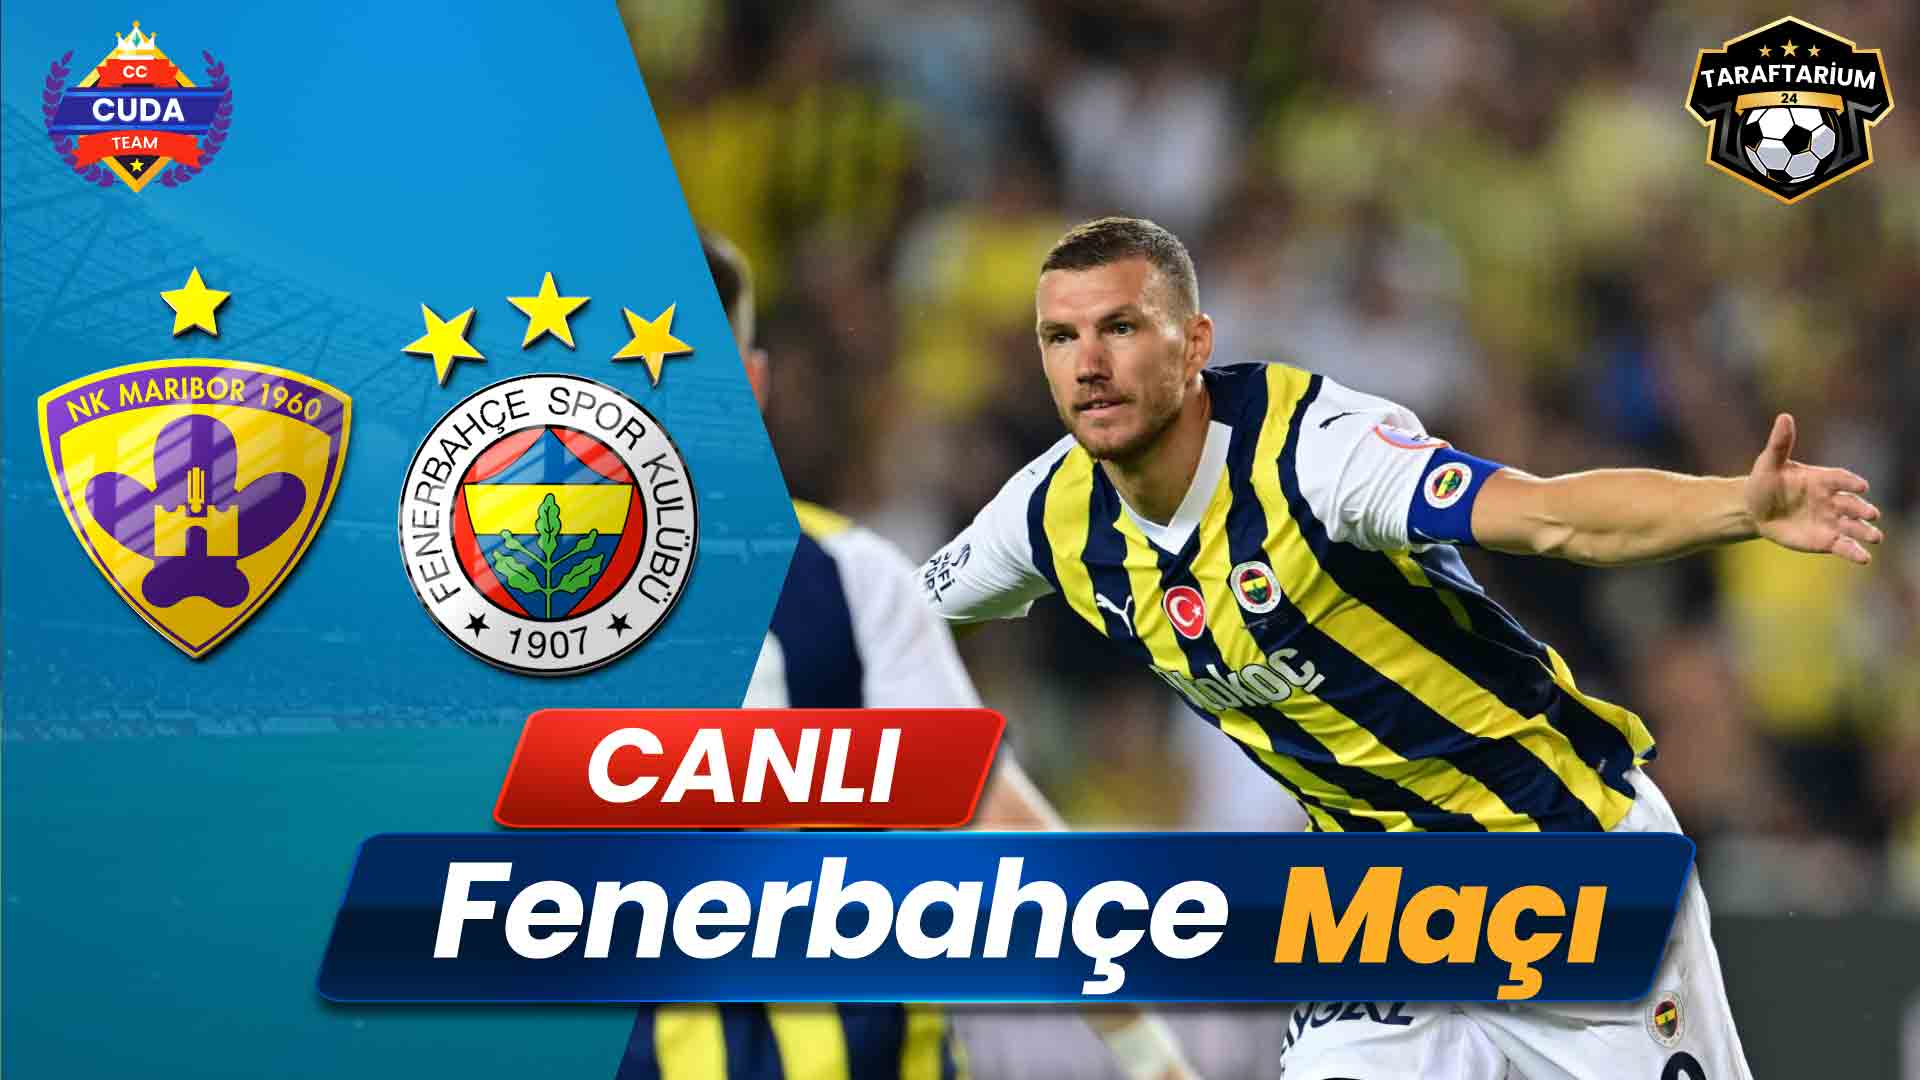 Maribor Fenerbahçe Maçı canlı izle, Şifresiz Taraftarium 24 TV